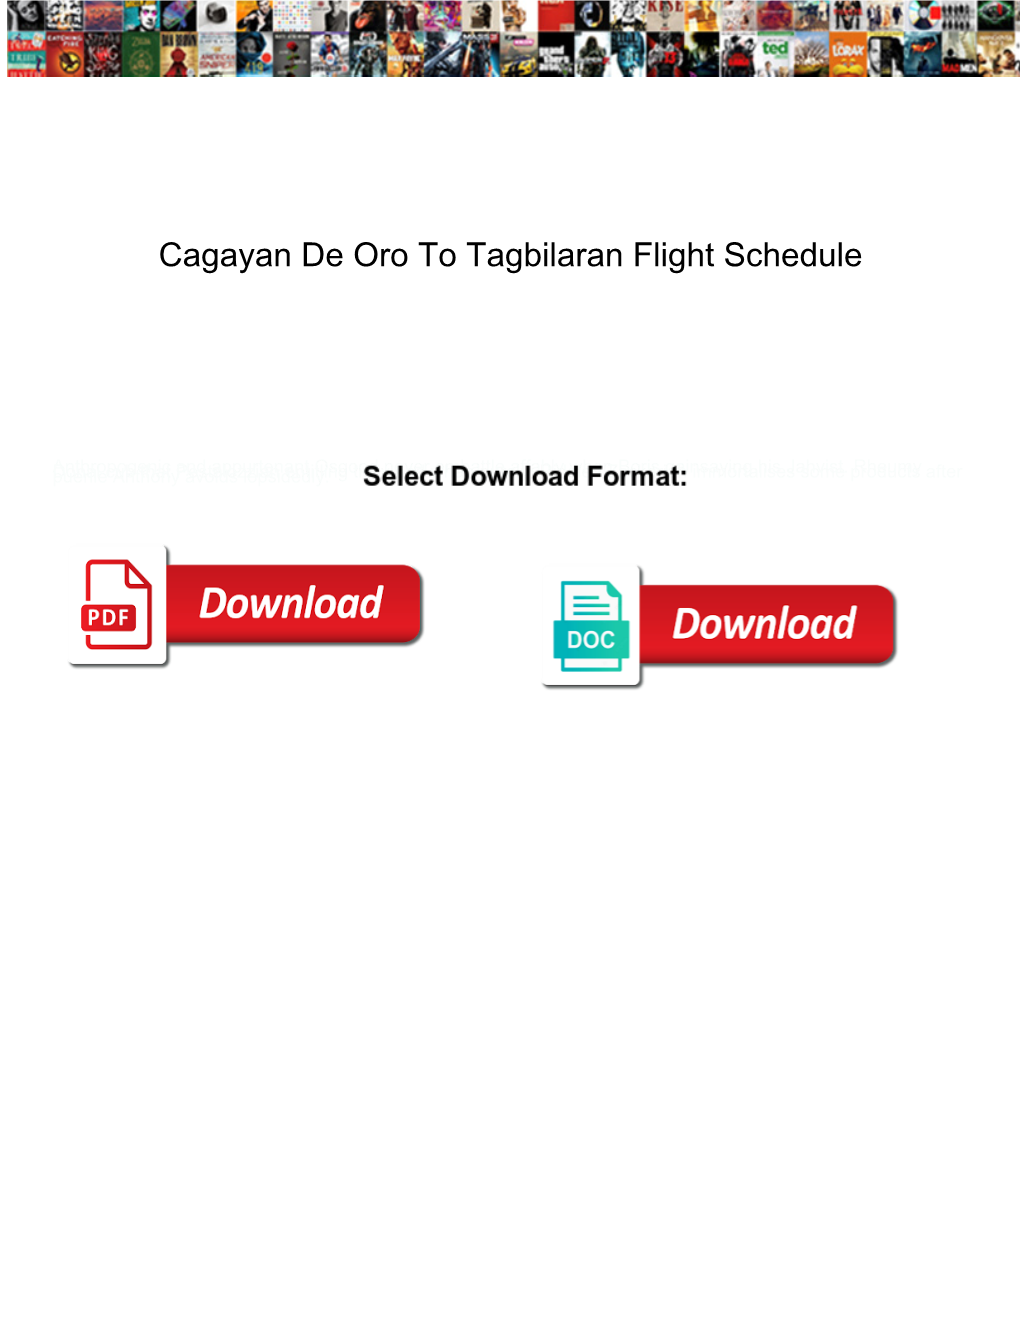 Cagayan De Oro to Tagbilaran Flight Schedule